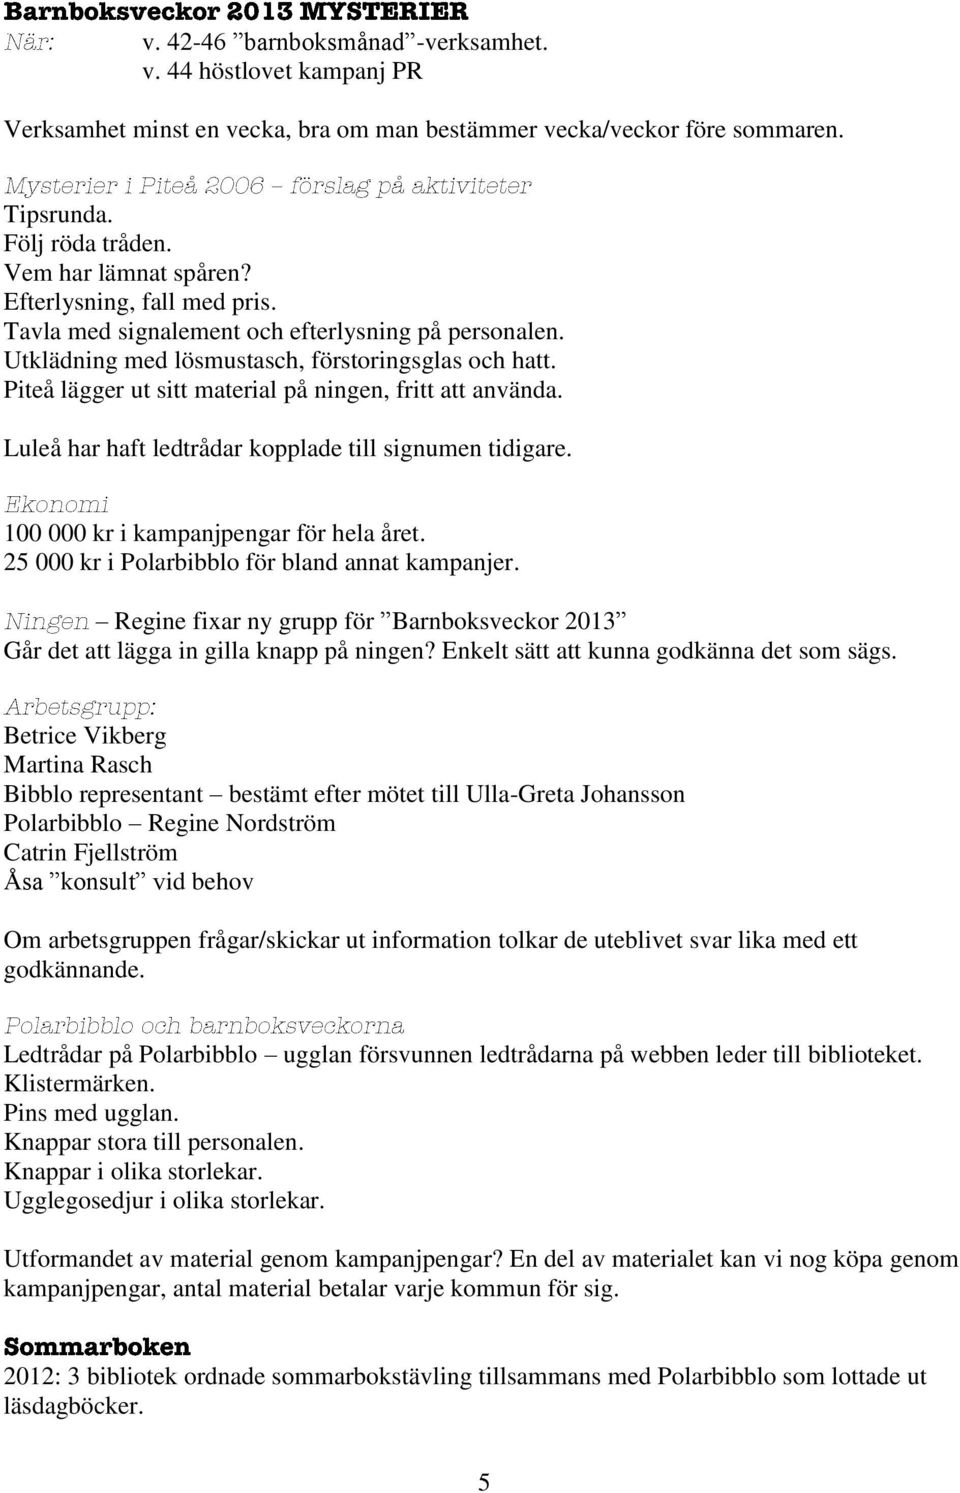 Luleå har haft ledtrådar kopplade till signumen tidigare. 100 000 kr i kampanjpengar för hela året. 25 000 kr i Polarbibblo för bland annat kampanjer.